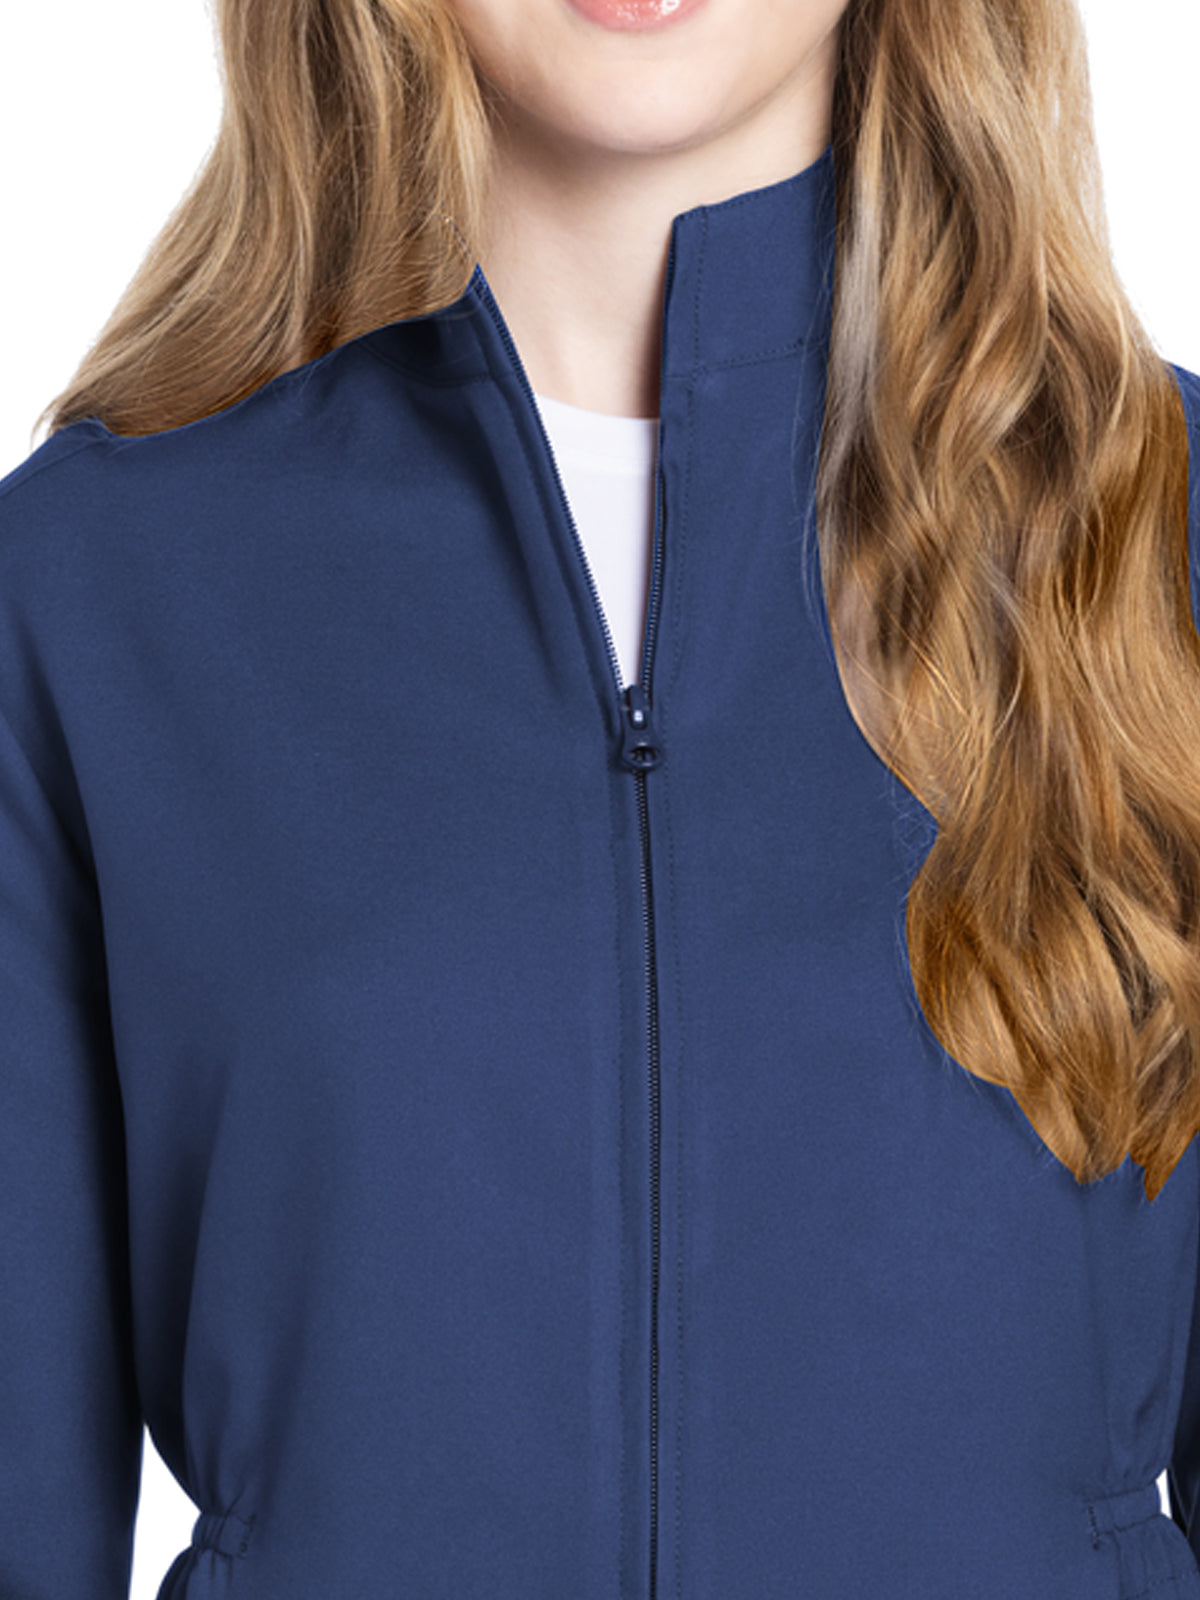 Women's 2-Pocket Zip Front Jacket